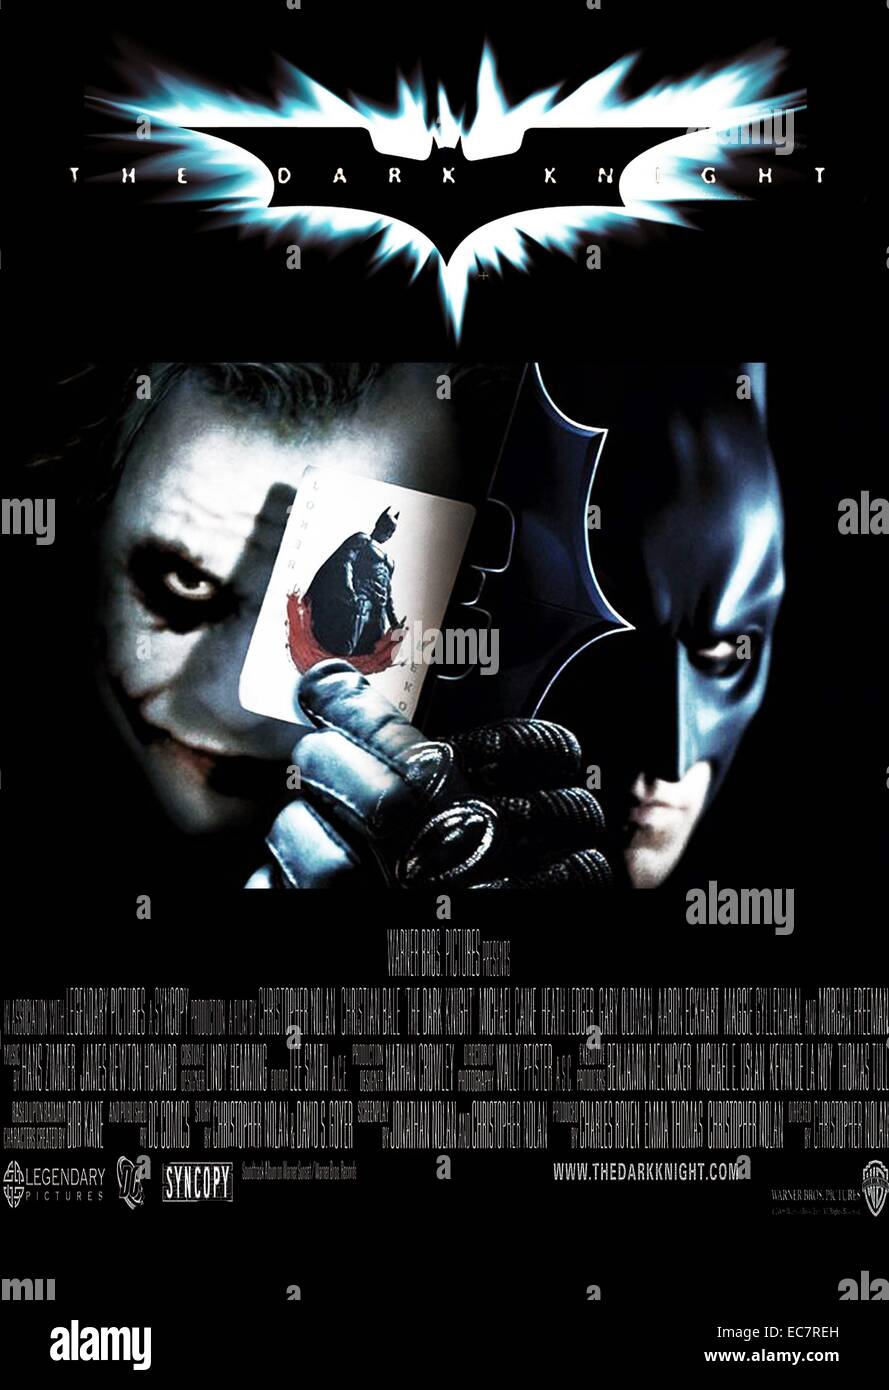 The Dark Knight è un 2008 angloamericano supereroe epico film diretto, prodotto e cowritten da Christopher Nolan. Basato sul DC Comics character Batman, il film è la seconda parte di Nolan Batman di film della serie e un sequel di 2005's Batman Begins. Starring Christian Bale, Heath Ledger e Michael Caine. Foto Stock